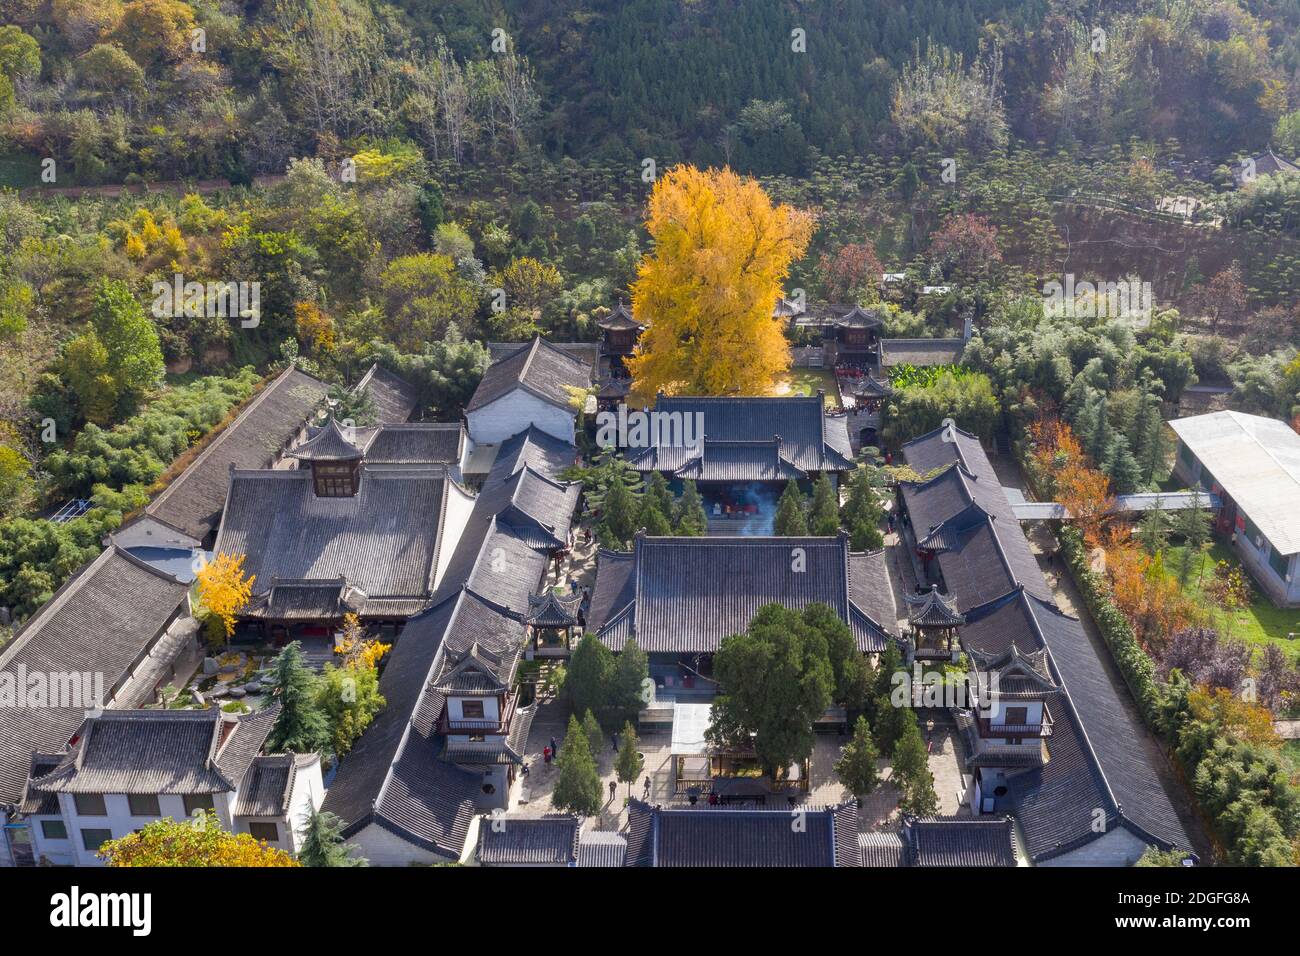 Un albero di 1,400 anni di ginkgo sta cadendo foglie sul terreno da novembre, trasformando il terreno di un tempio buddista in un oceano giallo e quindi dra Foto Stock